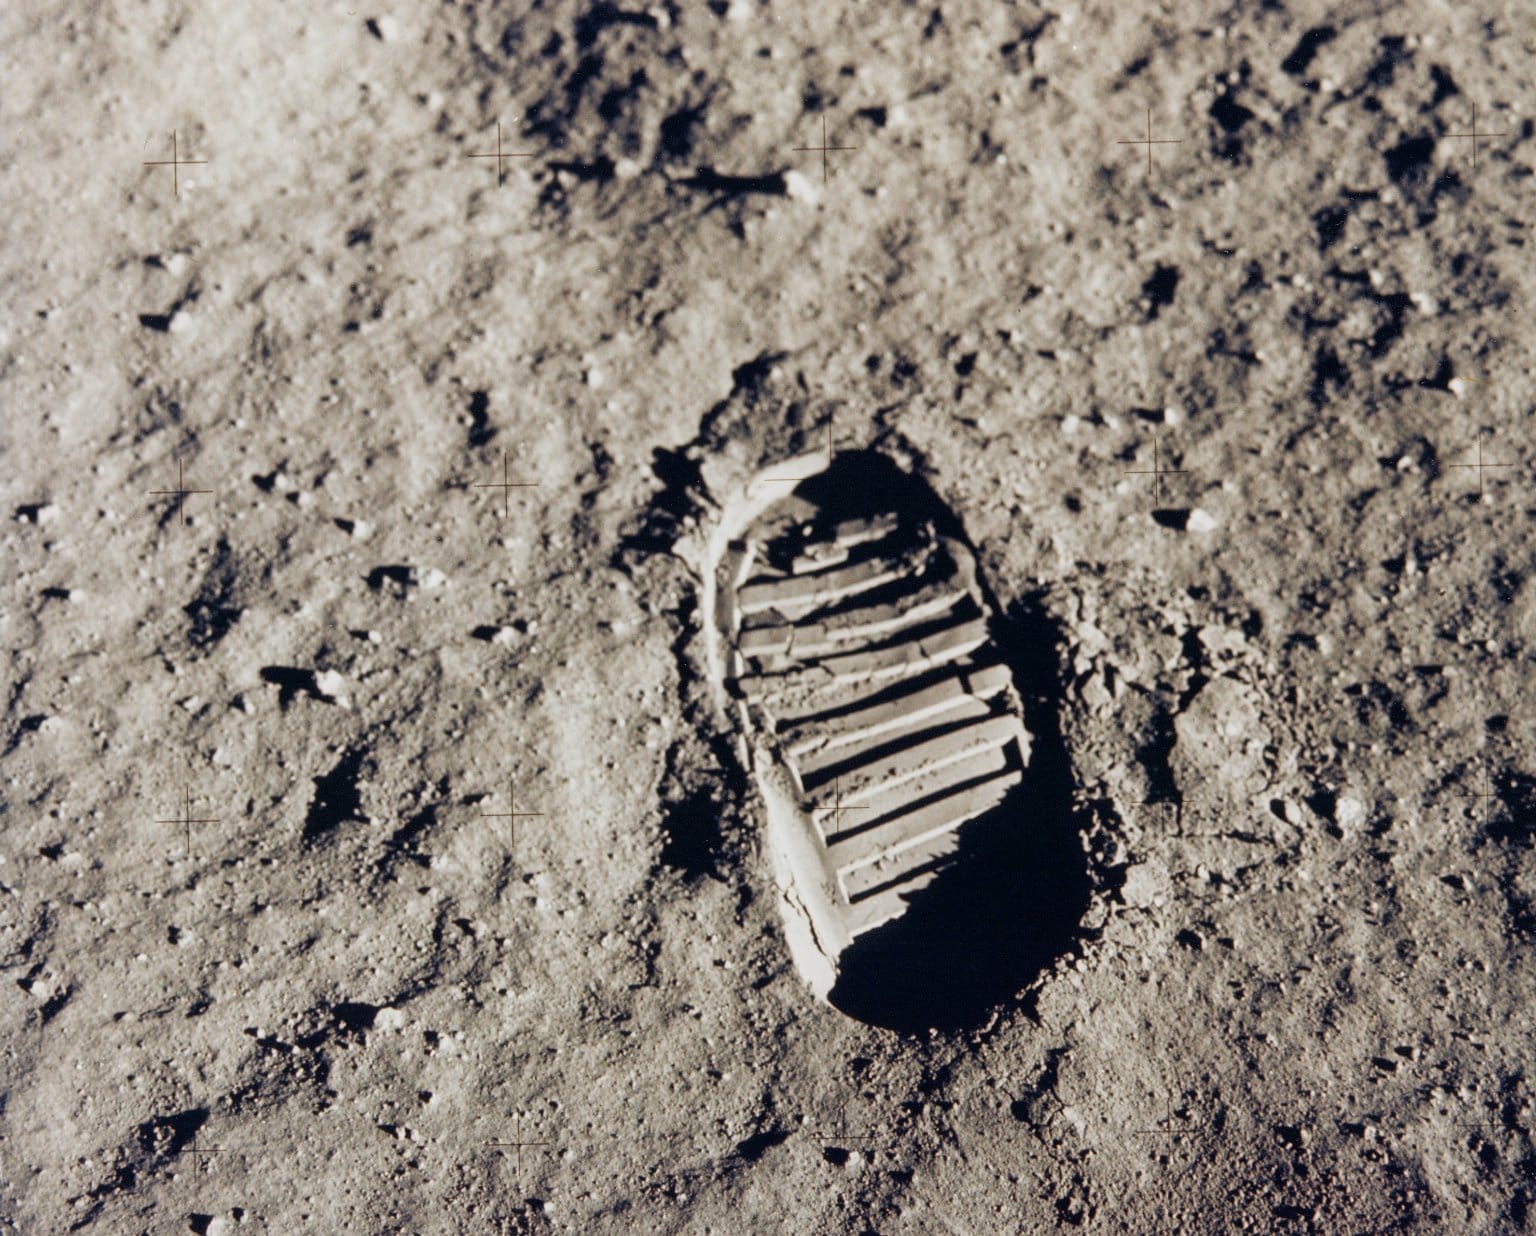 Uma das primeiras pegadas do homem na Lua. Pegada de Buzz Aldrin durante o passeio dele e de Neil Armstrong na Lua.